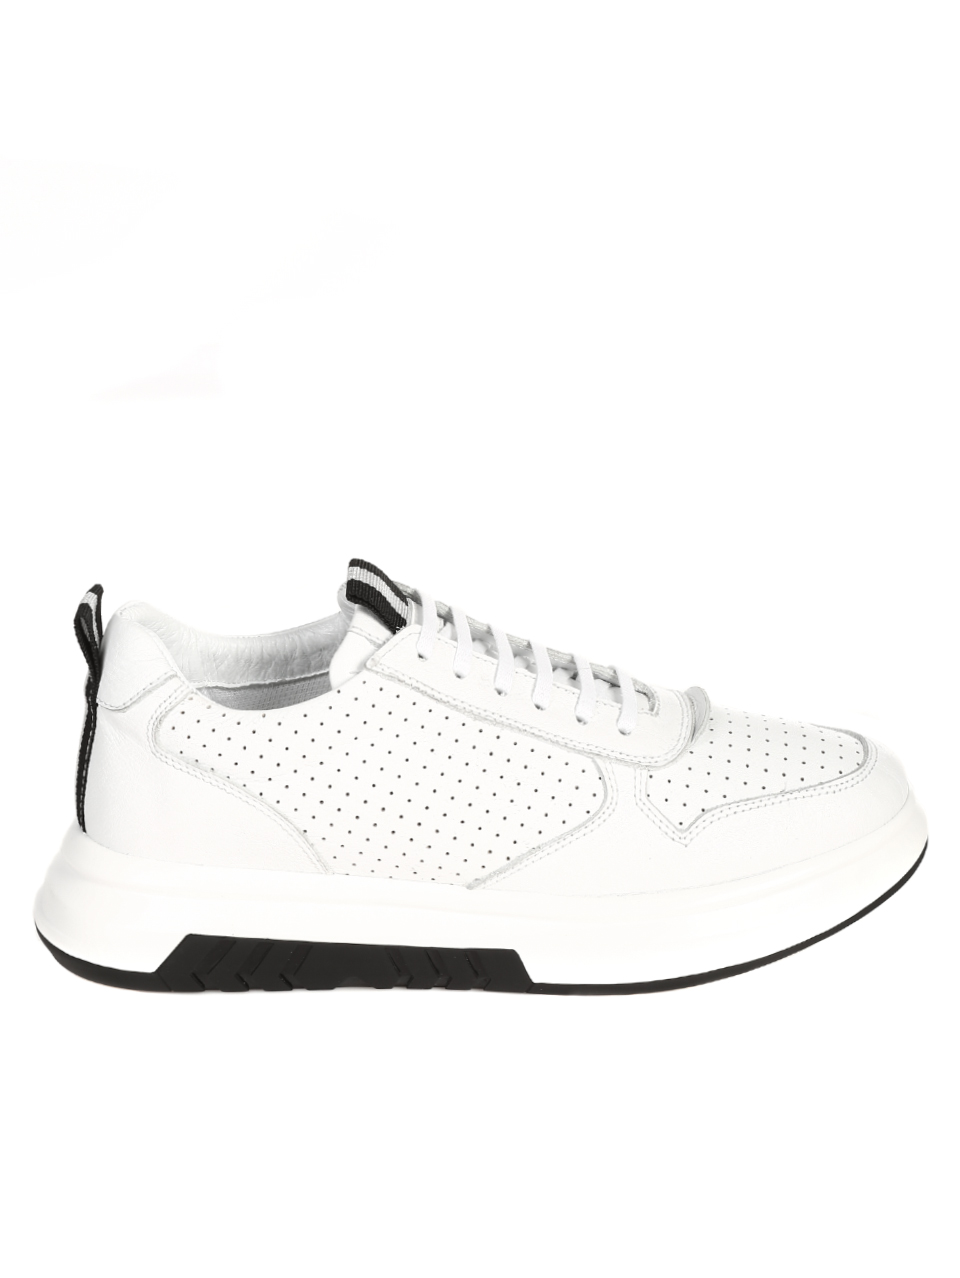 Ежедневни мъжки обувки от естественакожа в бяло 7AT-21283 white